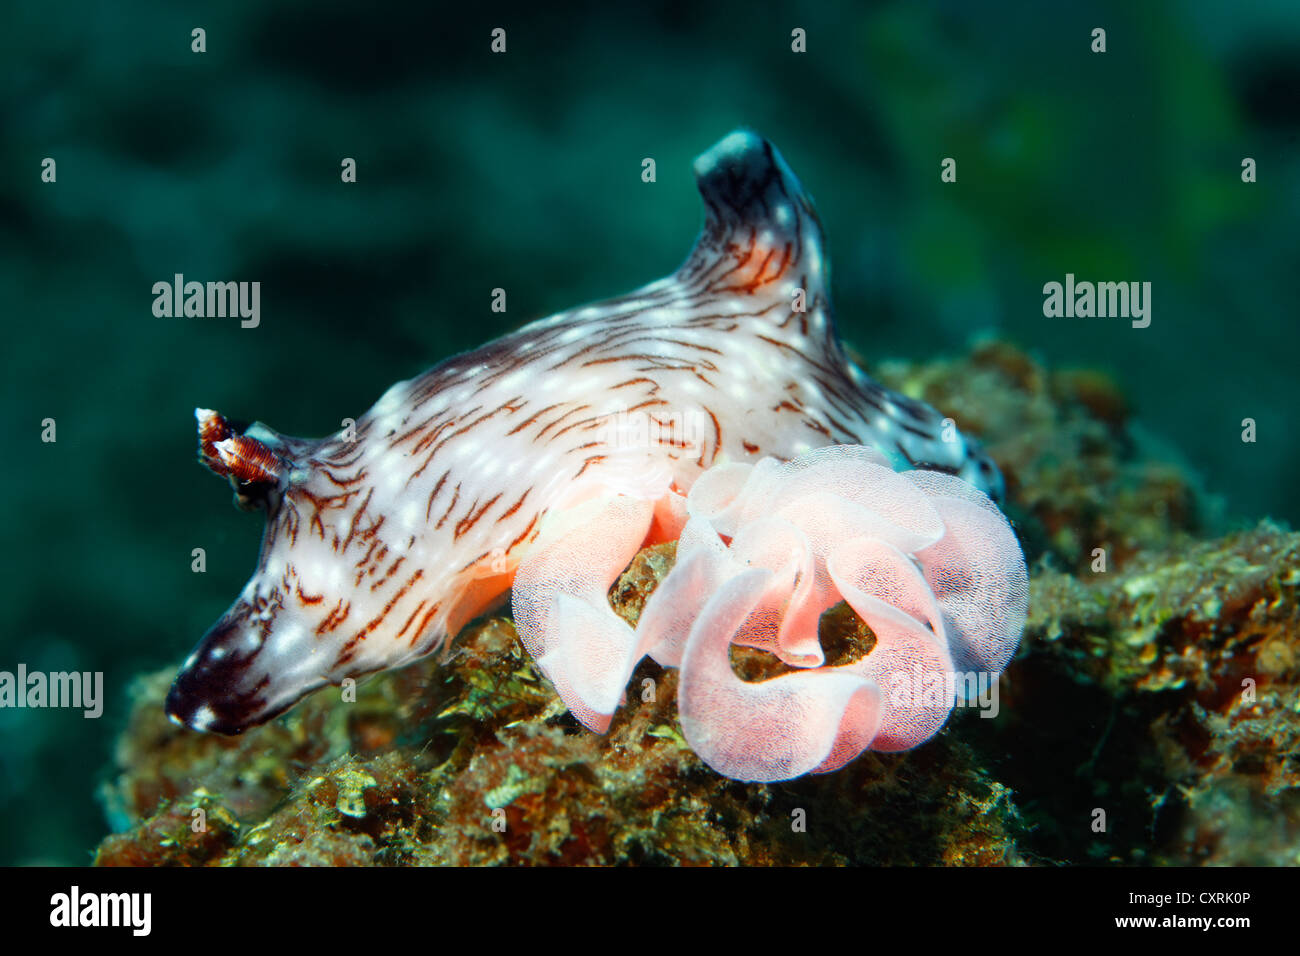 Especies de nudibranch (Jorunna rubescens), con el embrague, el caracol de mar, la Gran Barrera de Coral, un sitio del Patrimonio Mundial de la UNESCO, Queensland Foto de stock